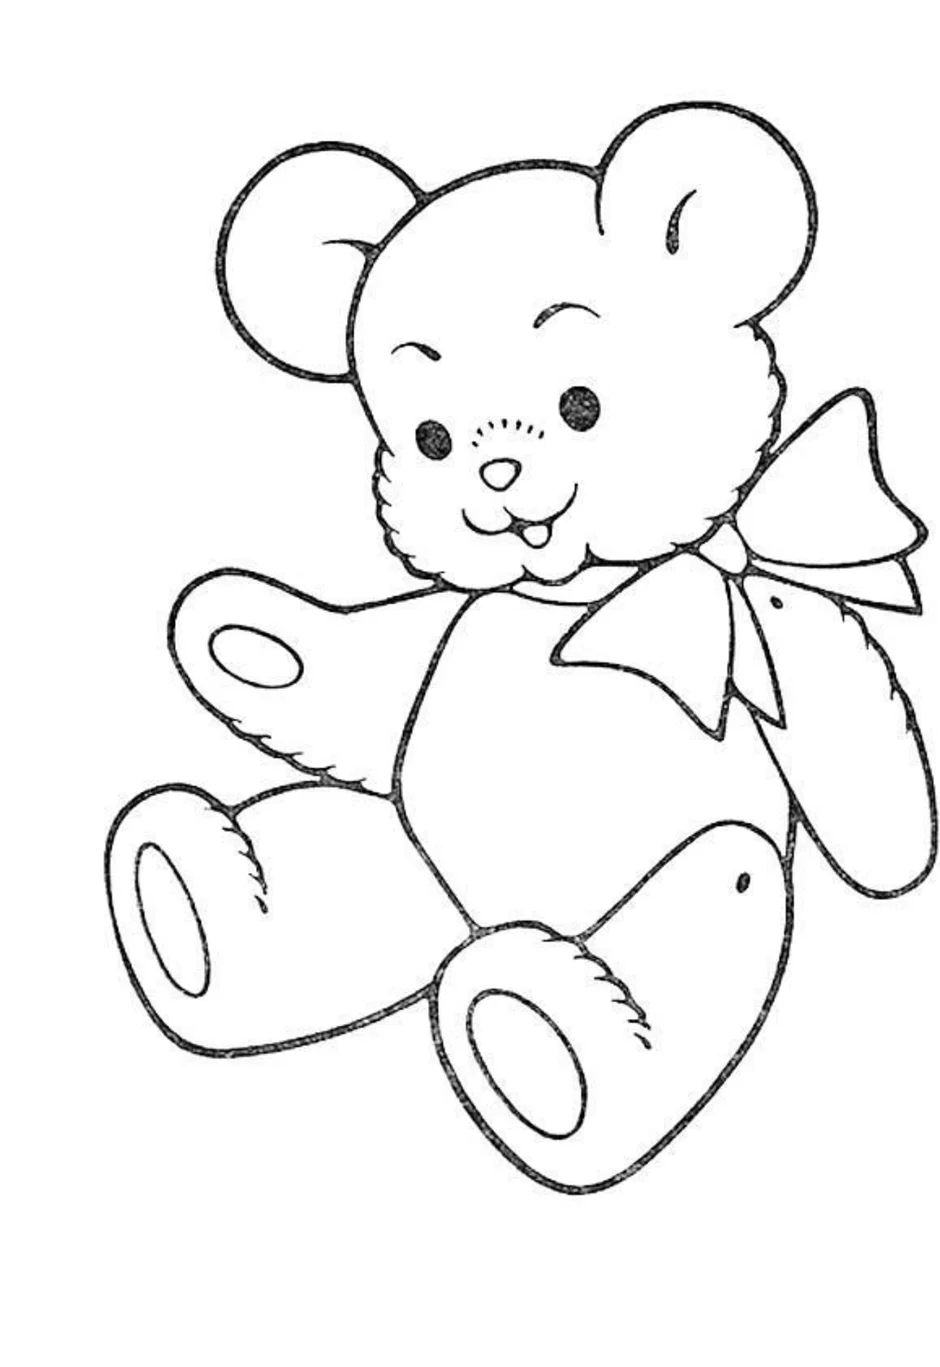 Раскраска игрушка картинка. Раскраска. Медвежонок. Раскраска "мишки". Плюшевый мишка раскраска. Мишка раскраска для детей.